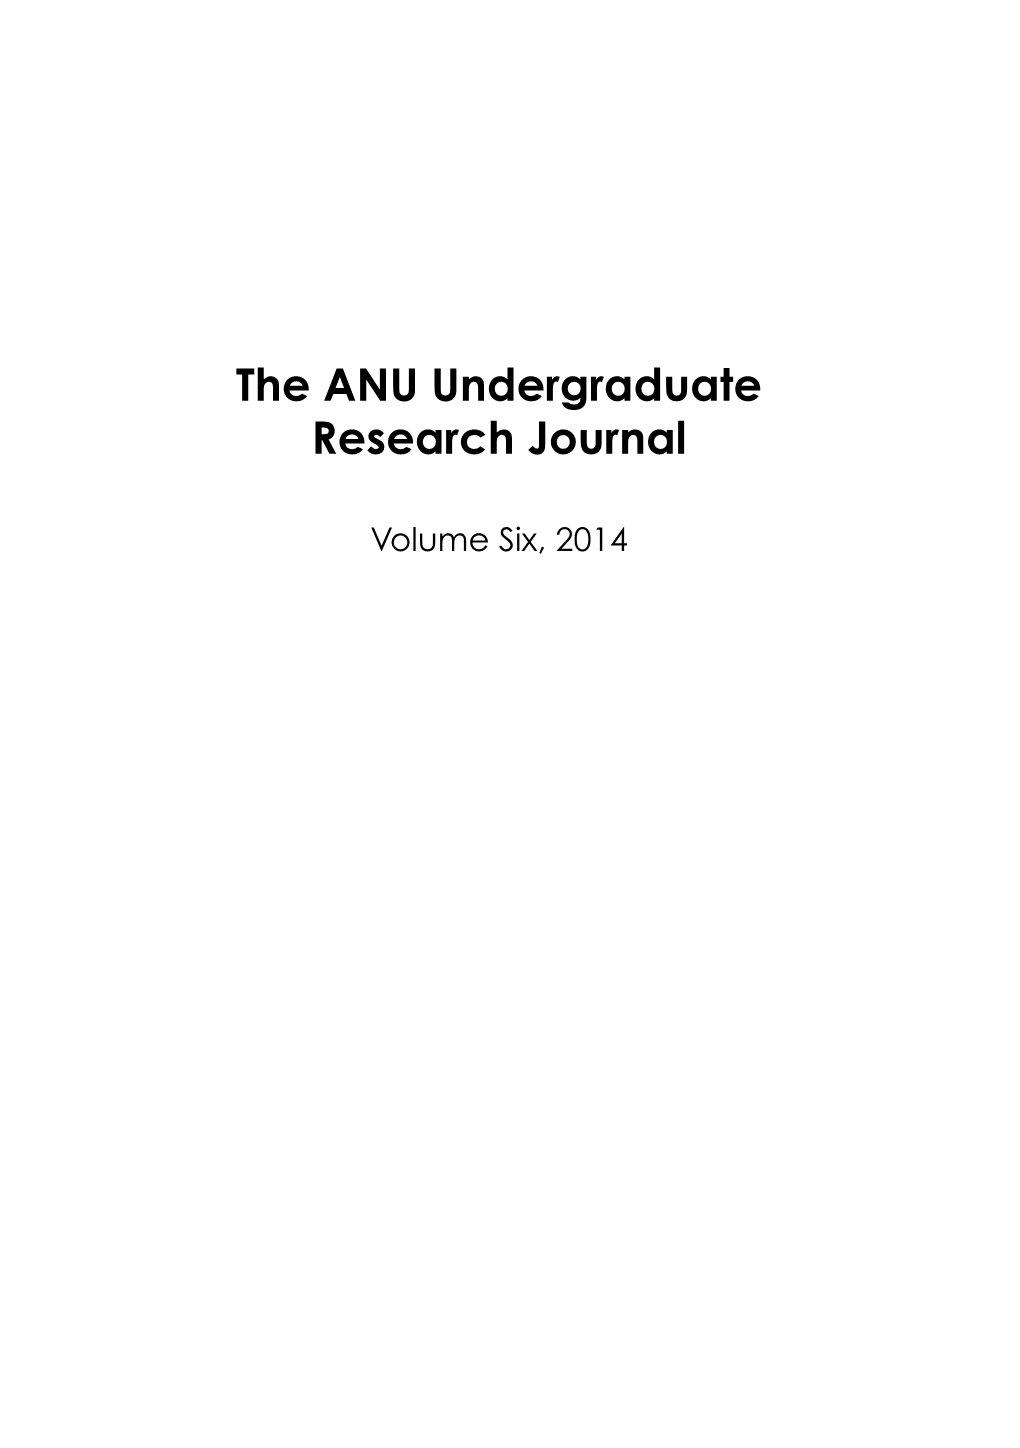 ANU Undergraduate Research Journal: Volume Six, 2014